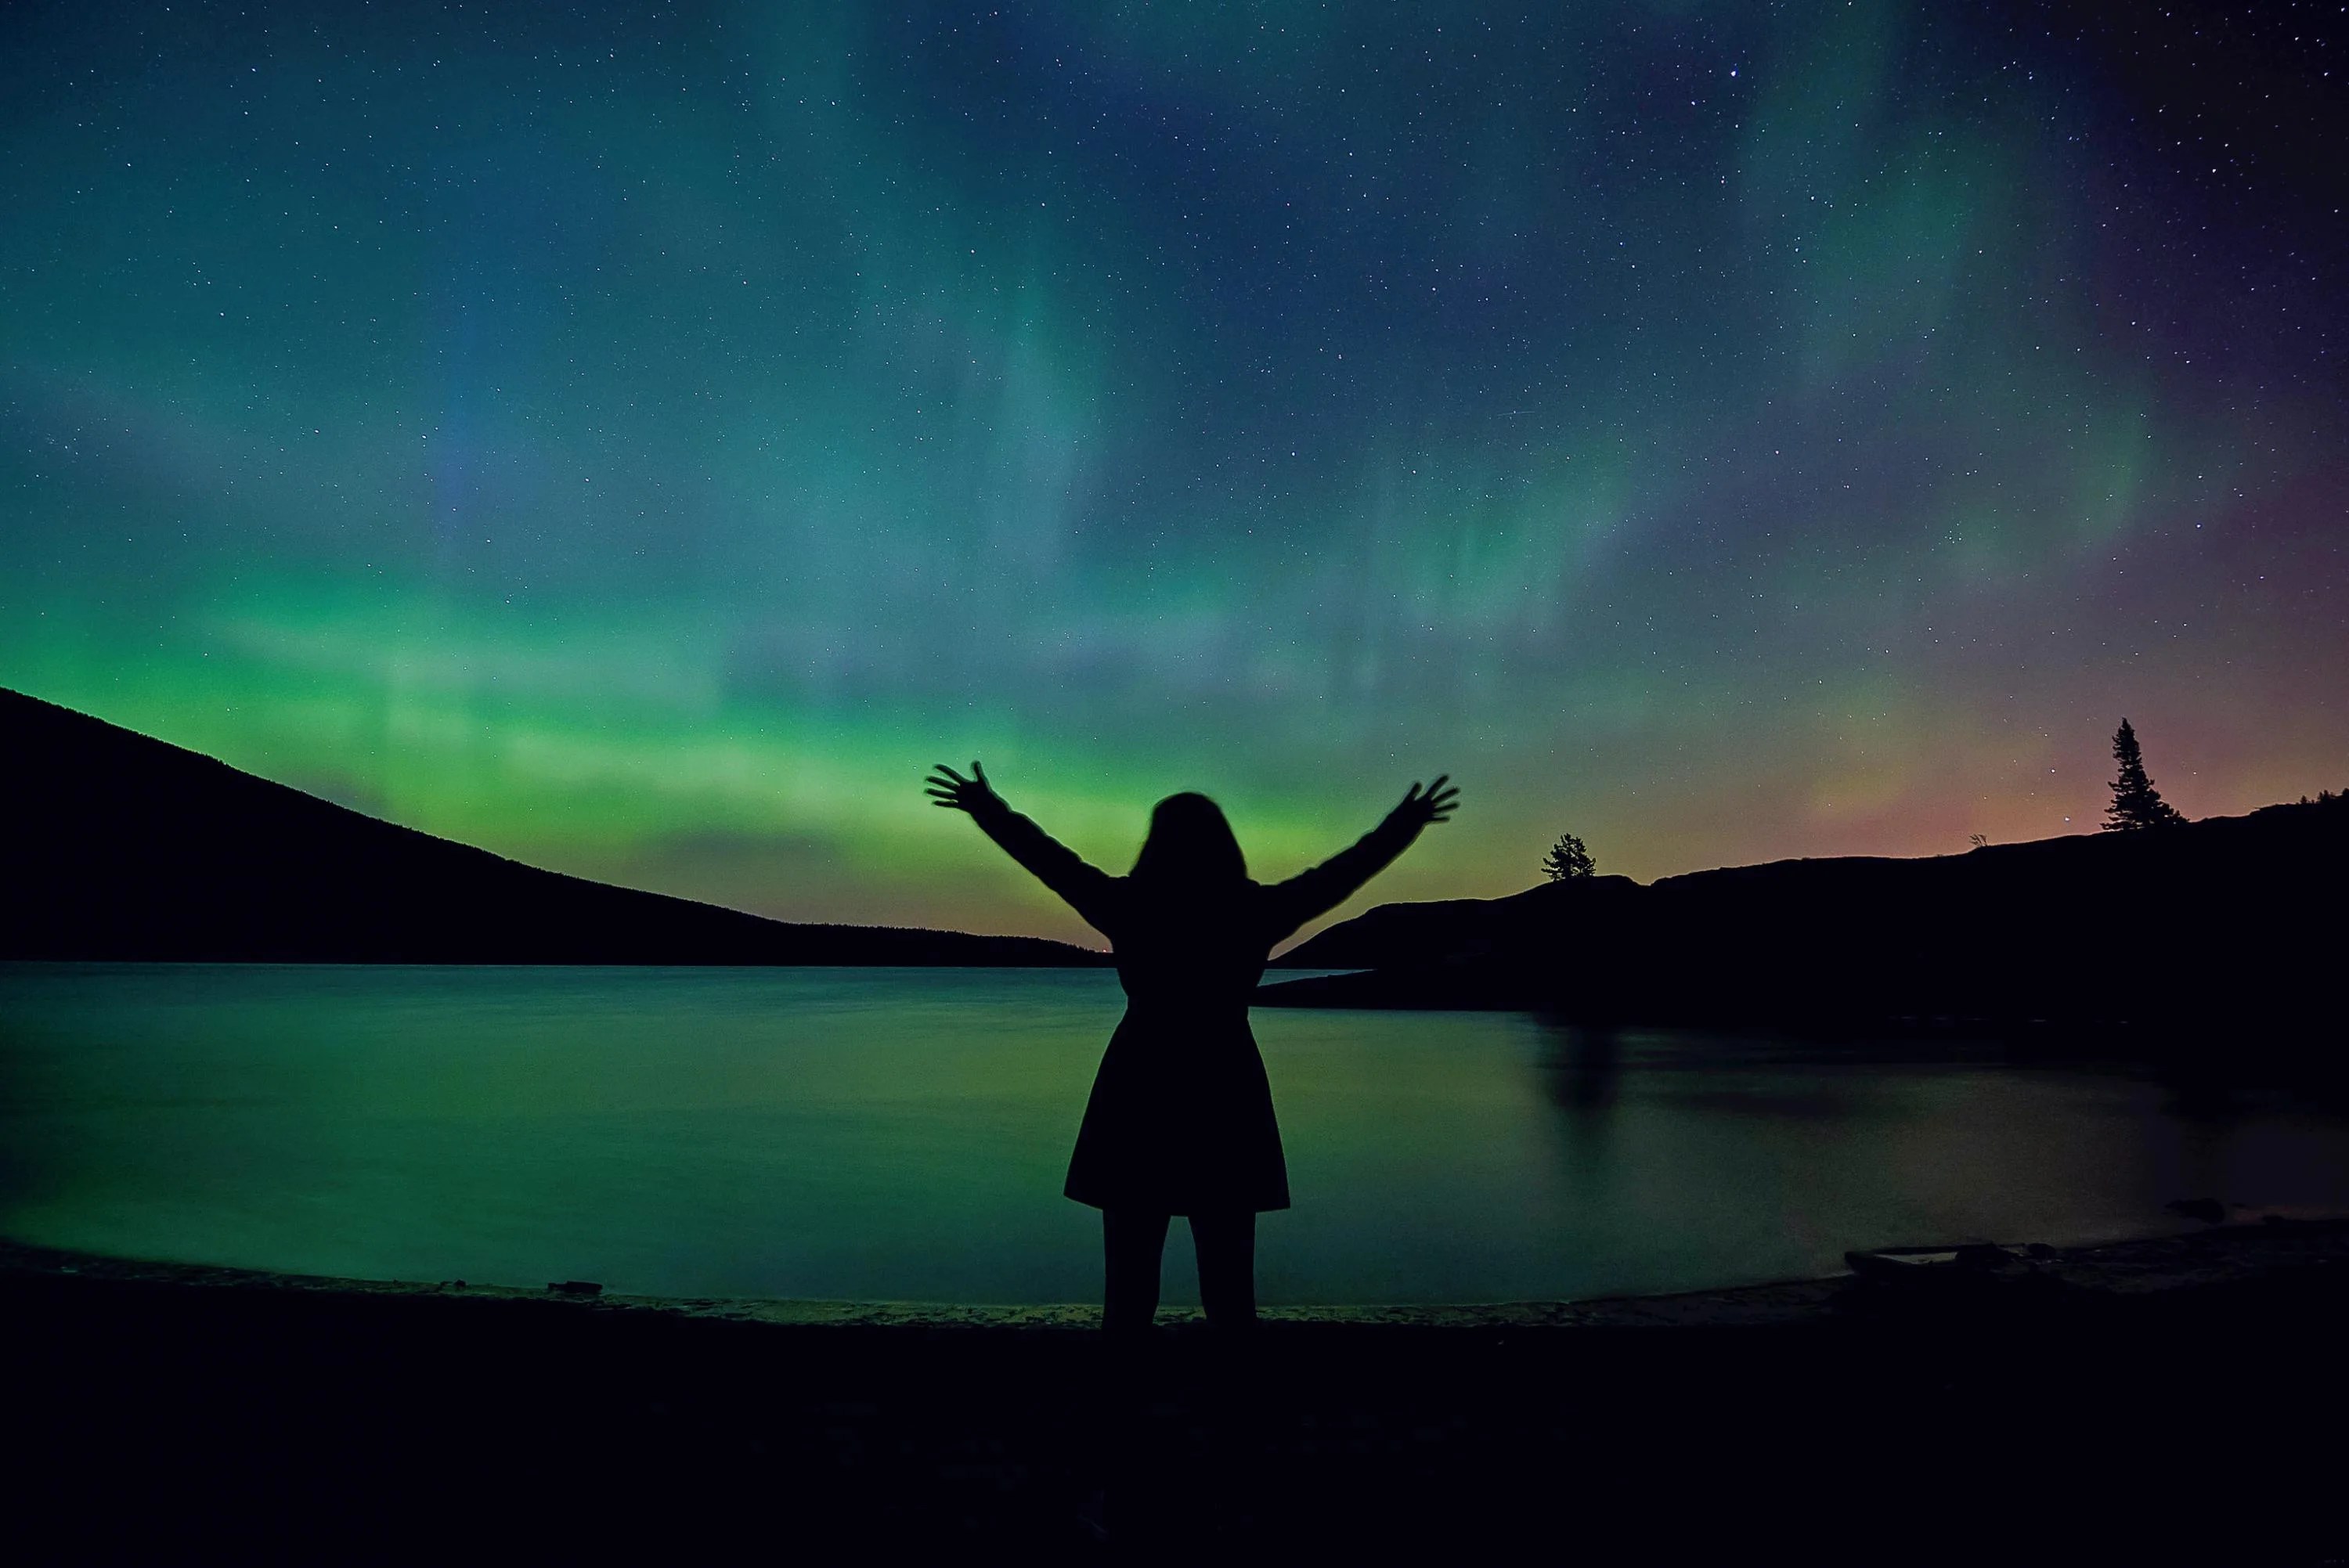 A woman raises her hands joyfully toward a colorful aurora